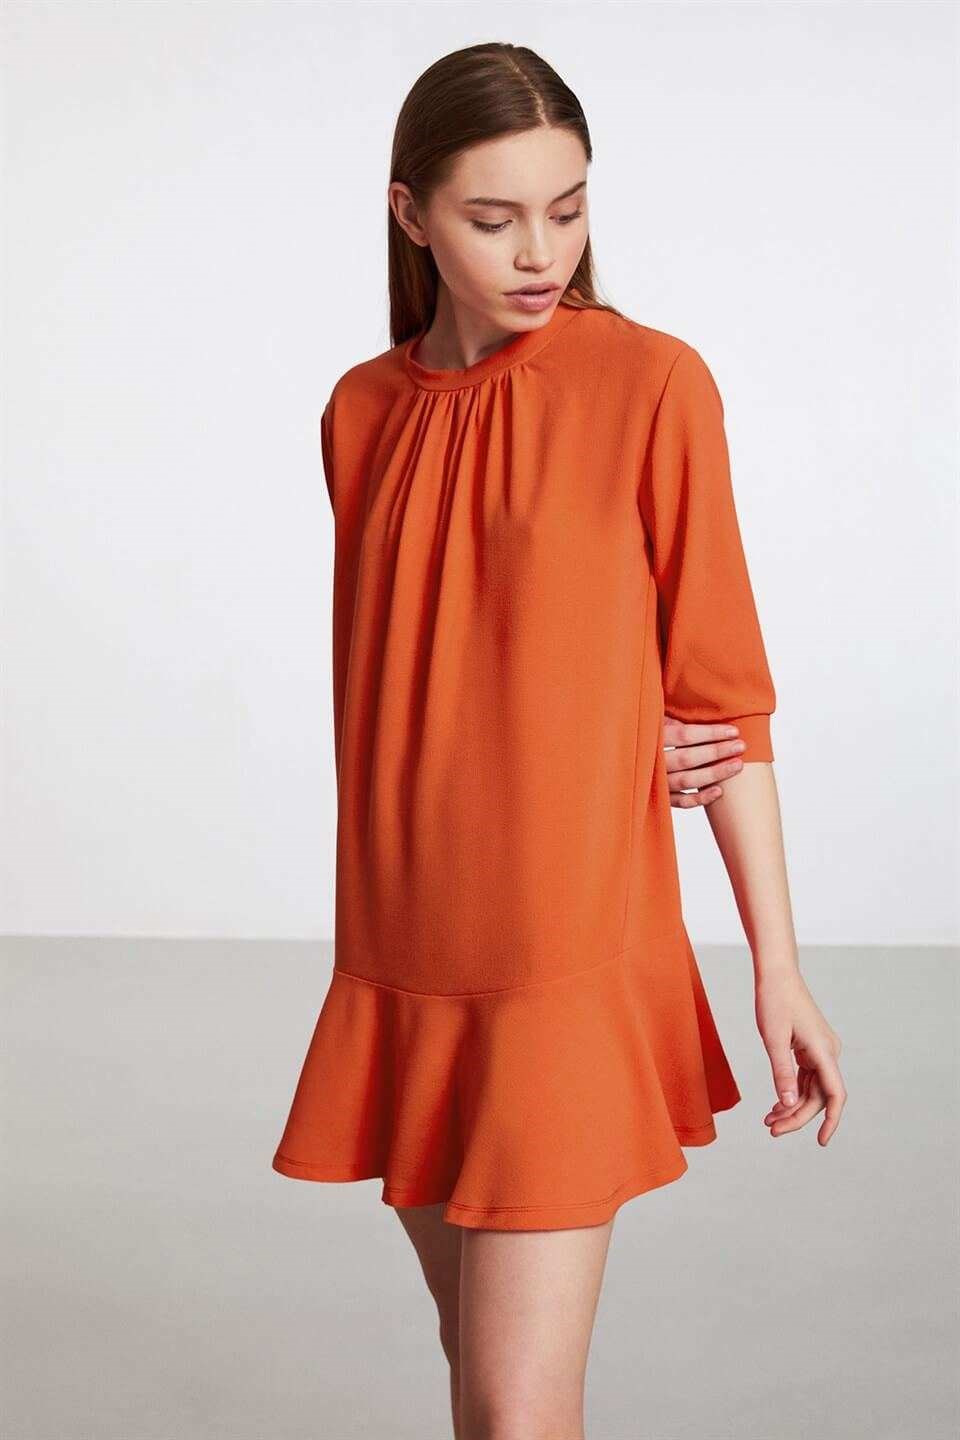 MALAGA Kadın Nar Çiçeği Düz Renk Yuvarlak Yaka Comfort Fit Elbise